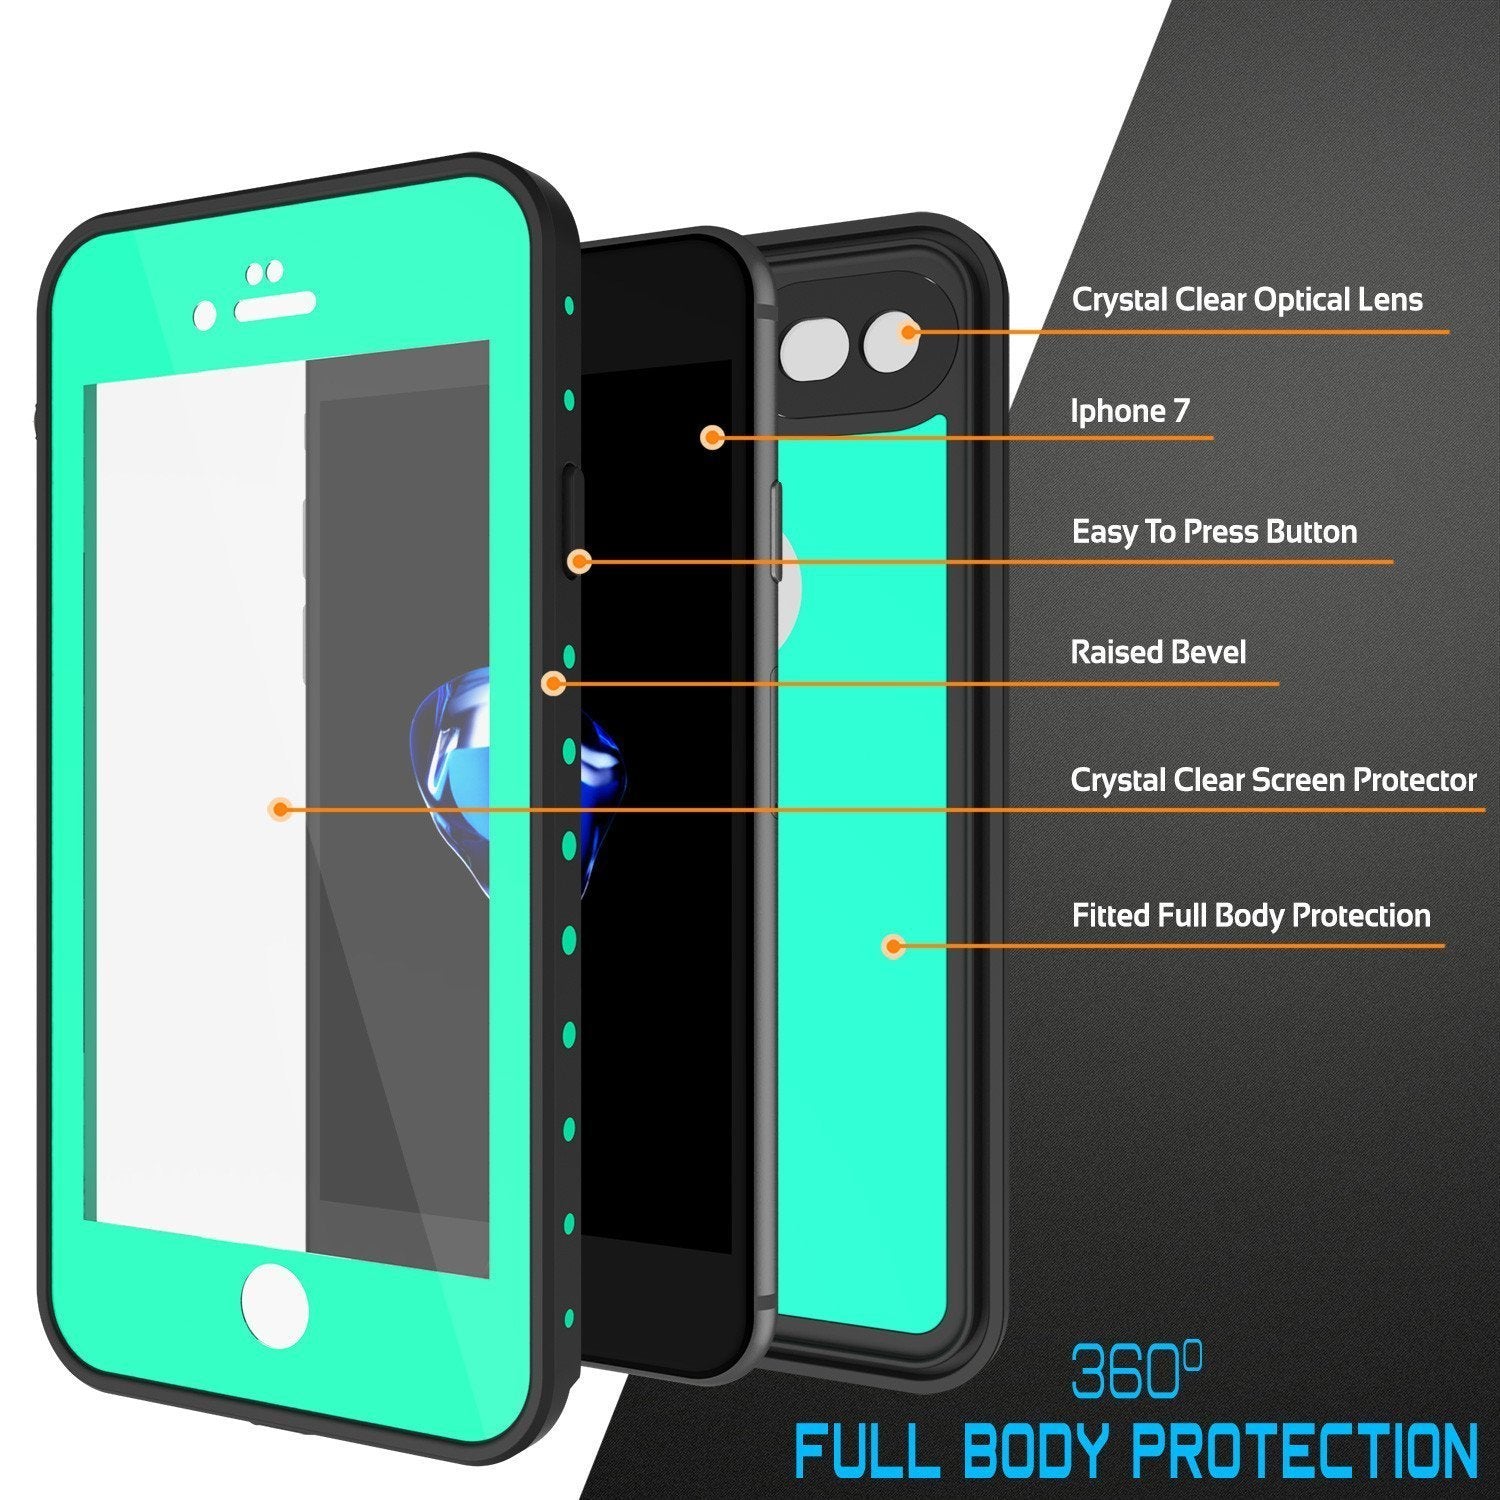 iPhone 8 Waterproof Case, Punkcase [Teal] [StudStar Series] [Slim Fit] [IP68 Certified]] [Dirtproof] [Snowproof]